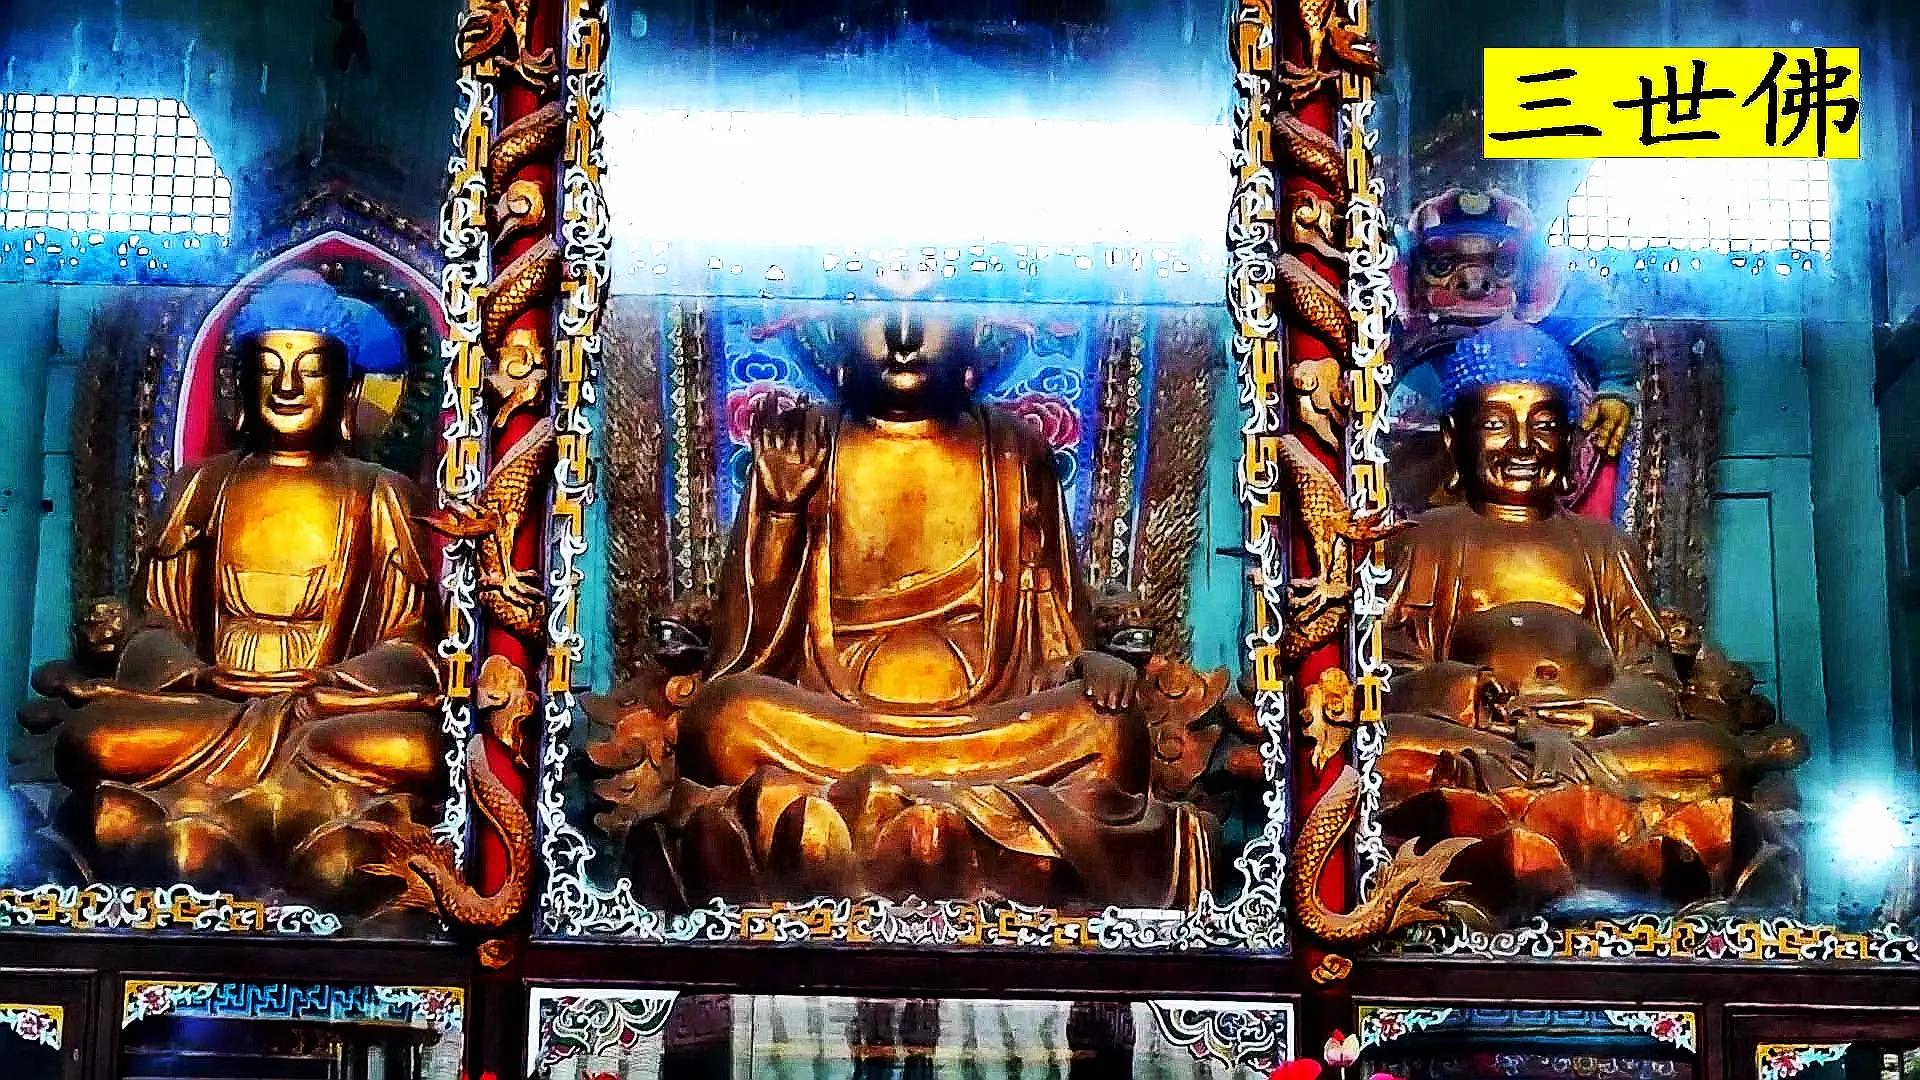 千手观音圣像塑有千只手的寺院——圣寿寺